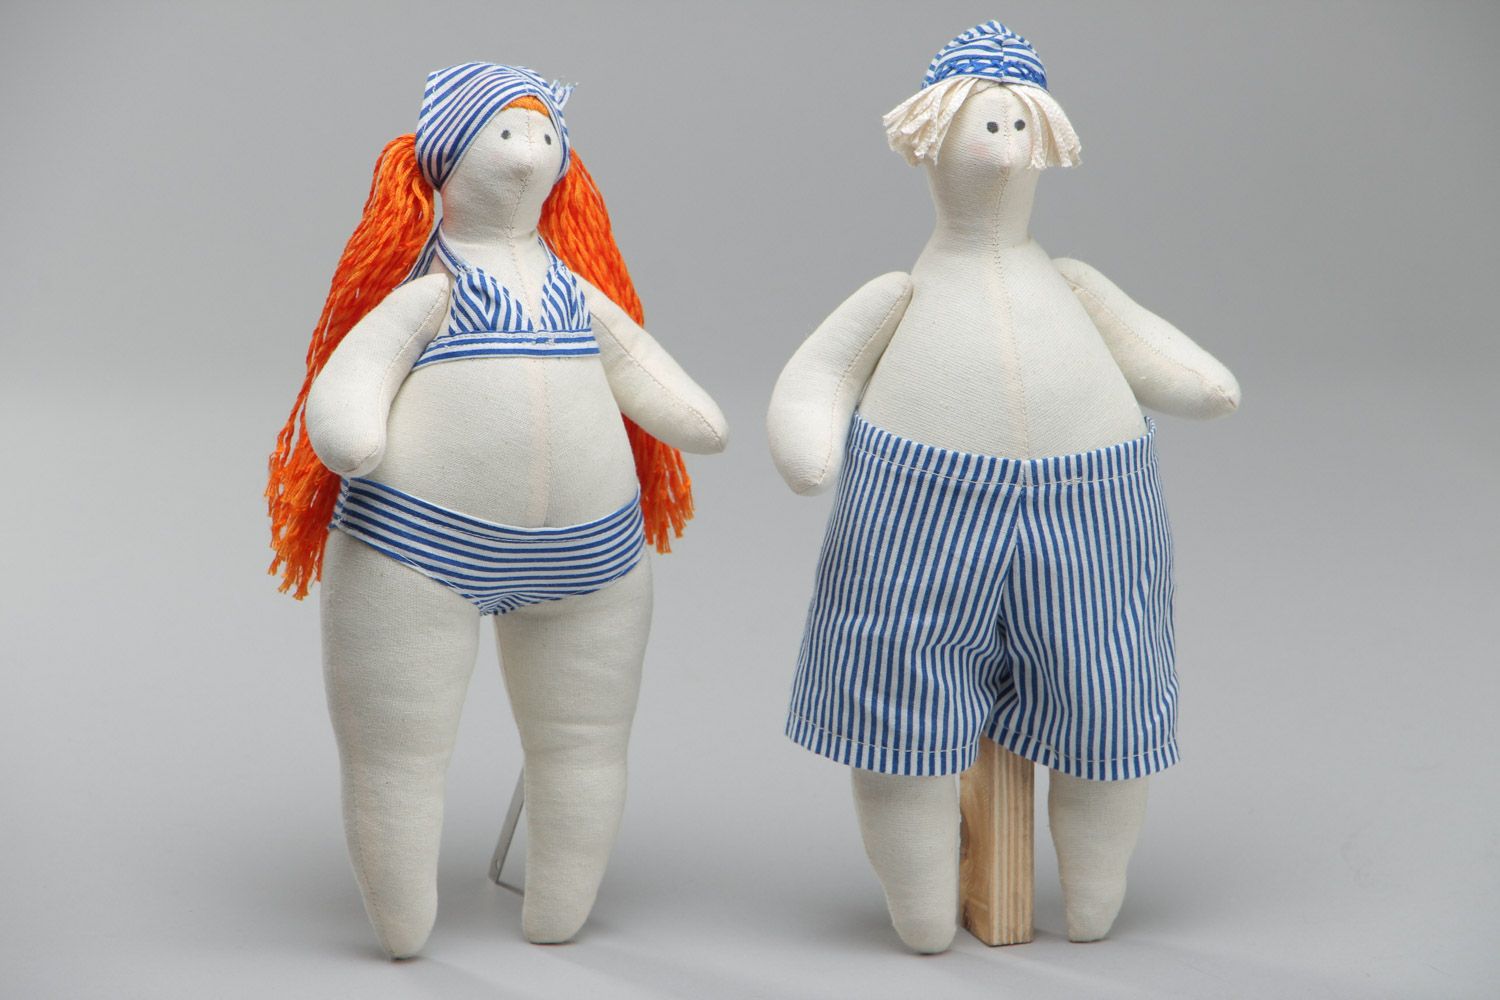 Игрушки куклы из ткани набор 2 штуки мягкие красивые ручной работы пляжники фото 2